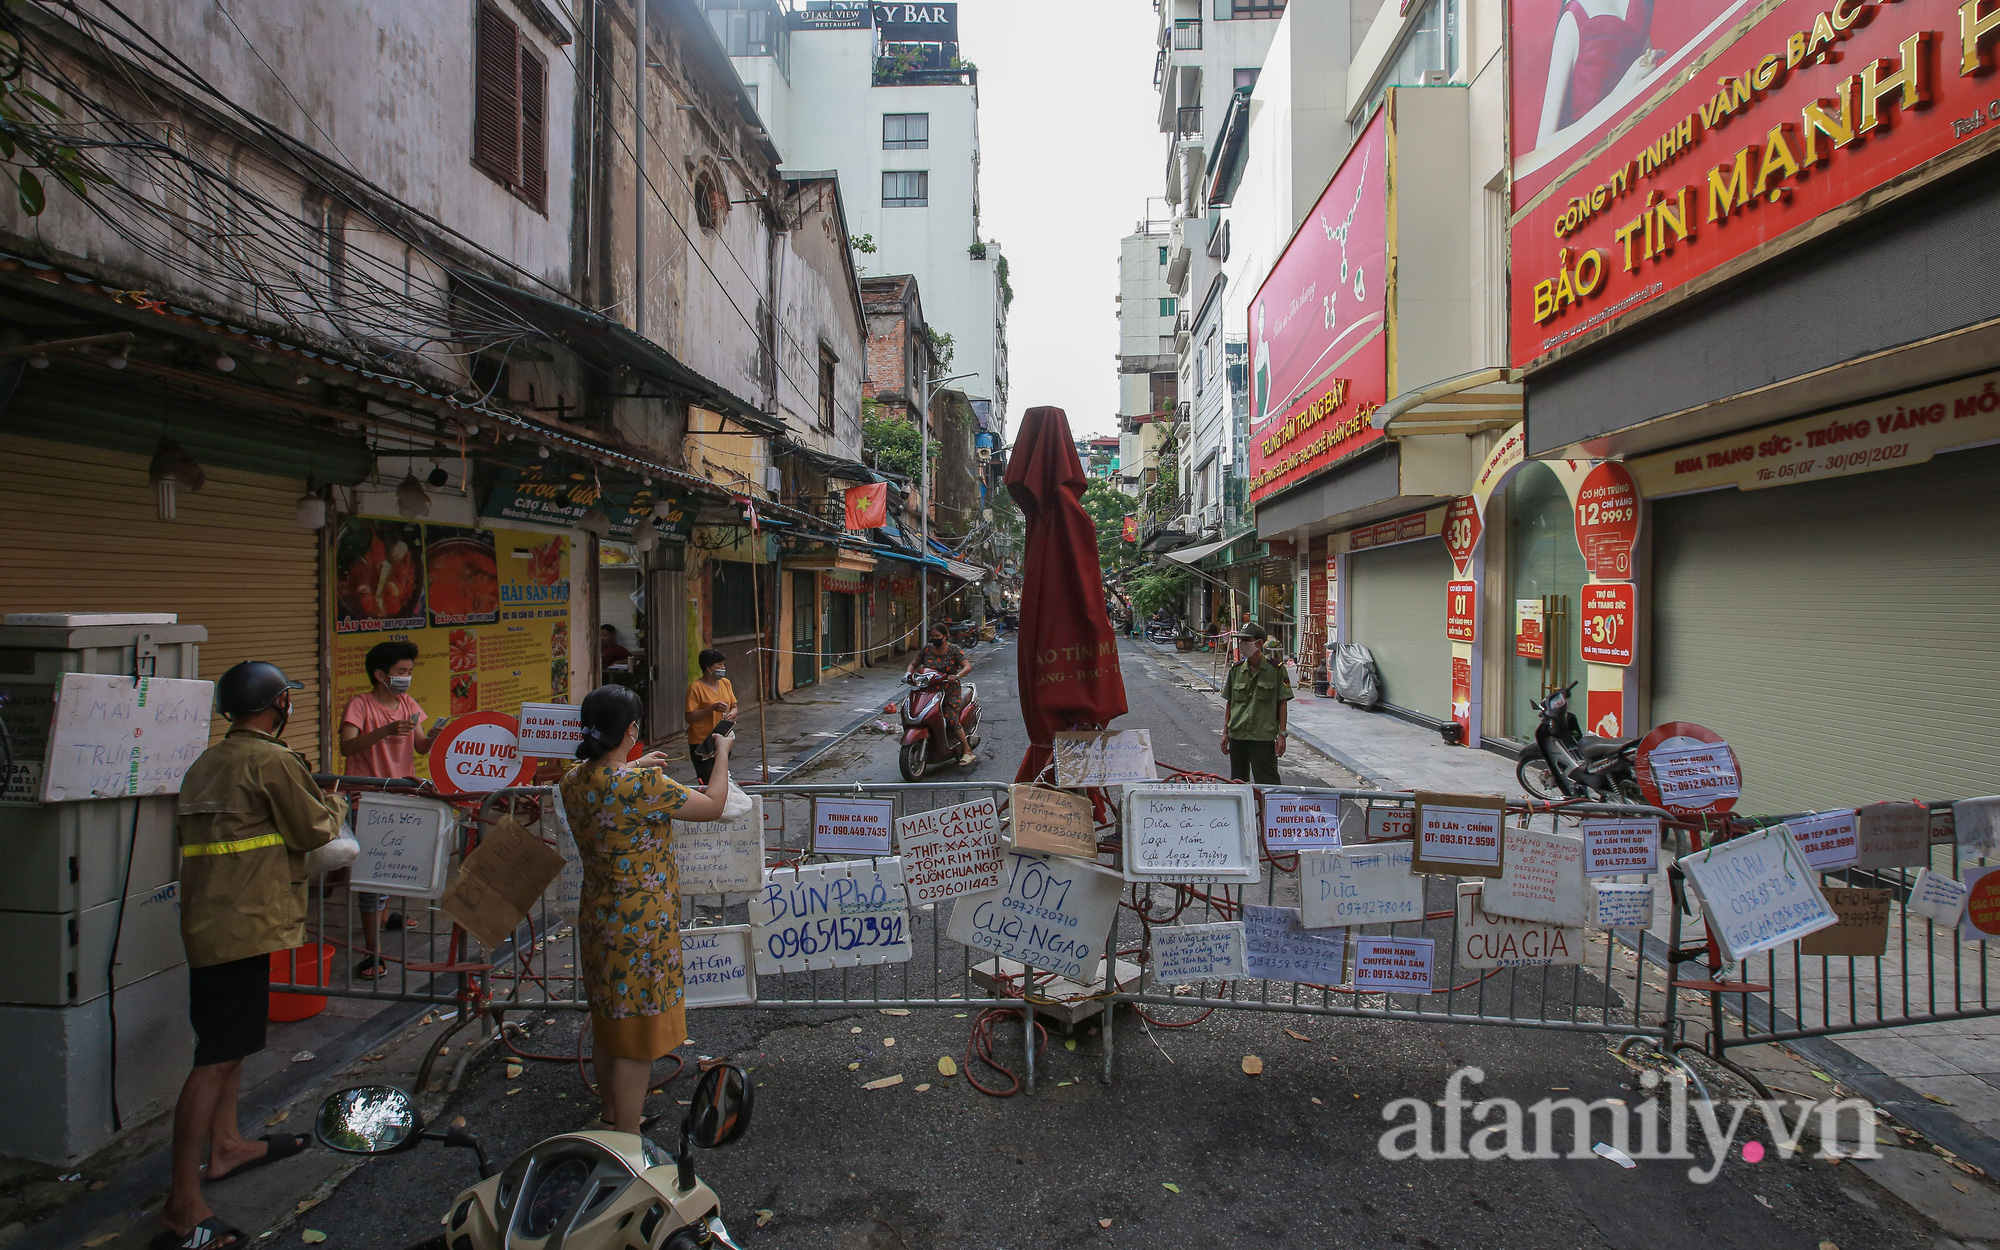 Hà Nội: Chợ phố cổ biển quảng cáo treo kín hàng rào, ai mua gì "a lô có ngay" không cần vào chợ